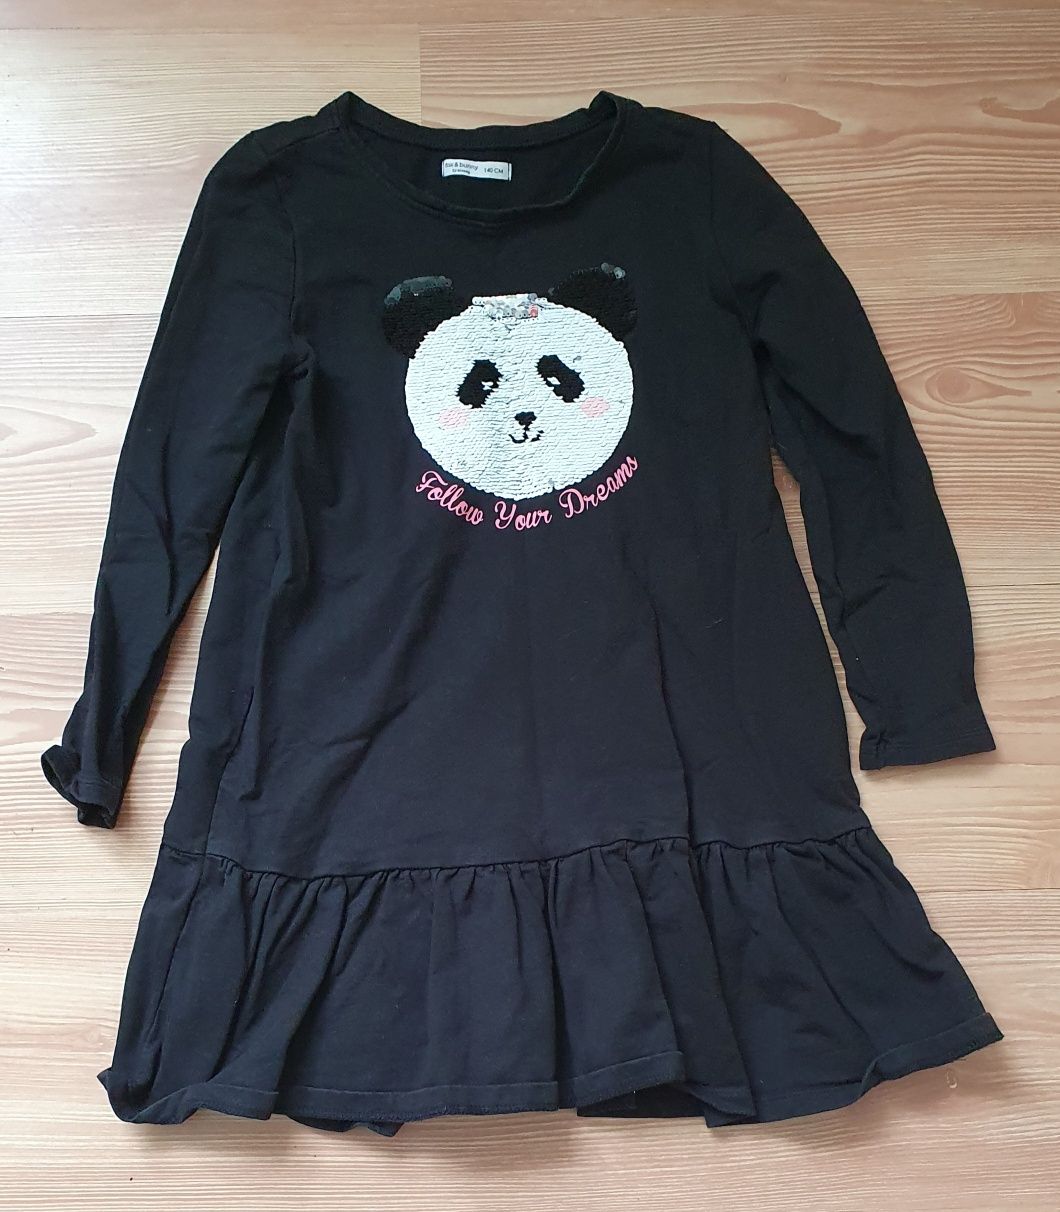 Czarna sukienka długi rękaw r. 140 panda